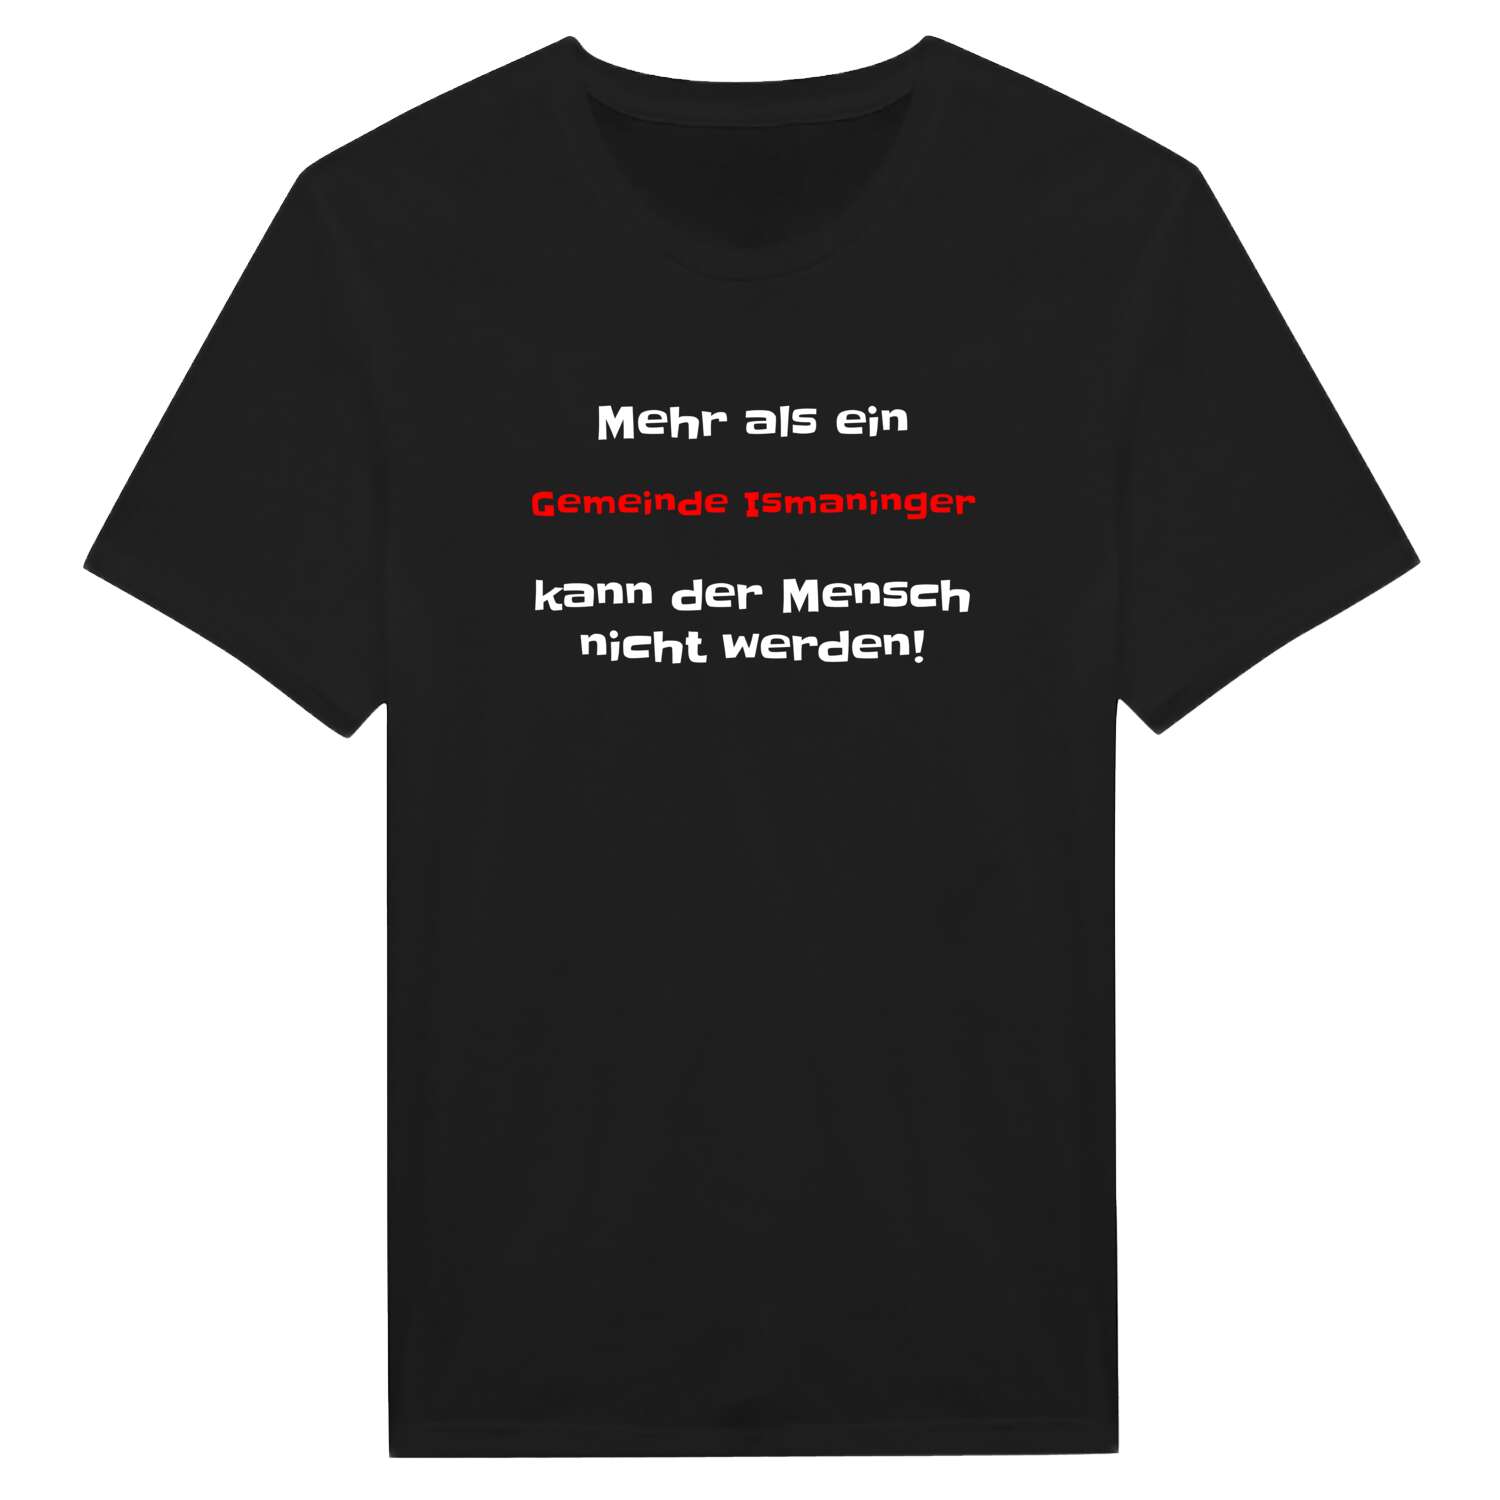 Gemeinde Ismaning T-Shirt »Mehr als ein«